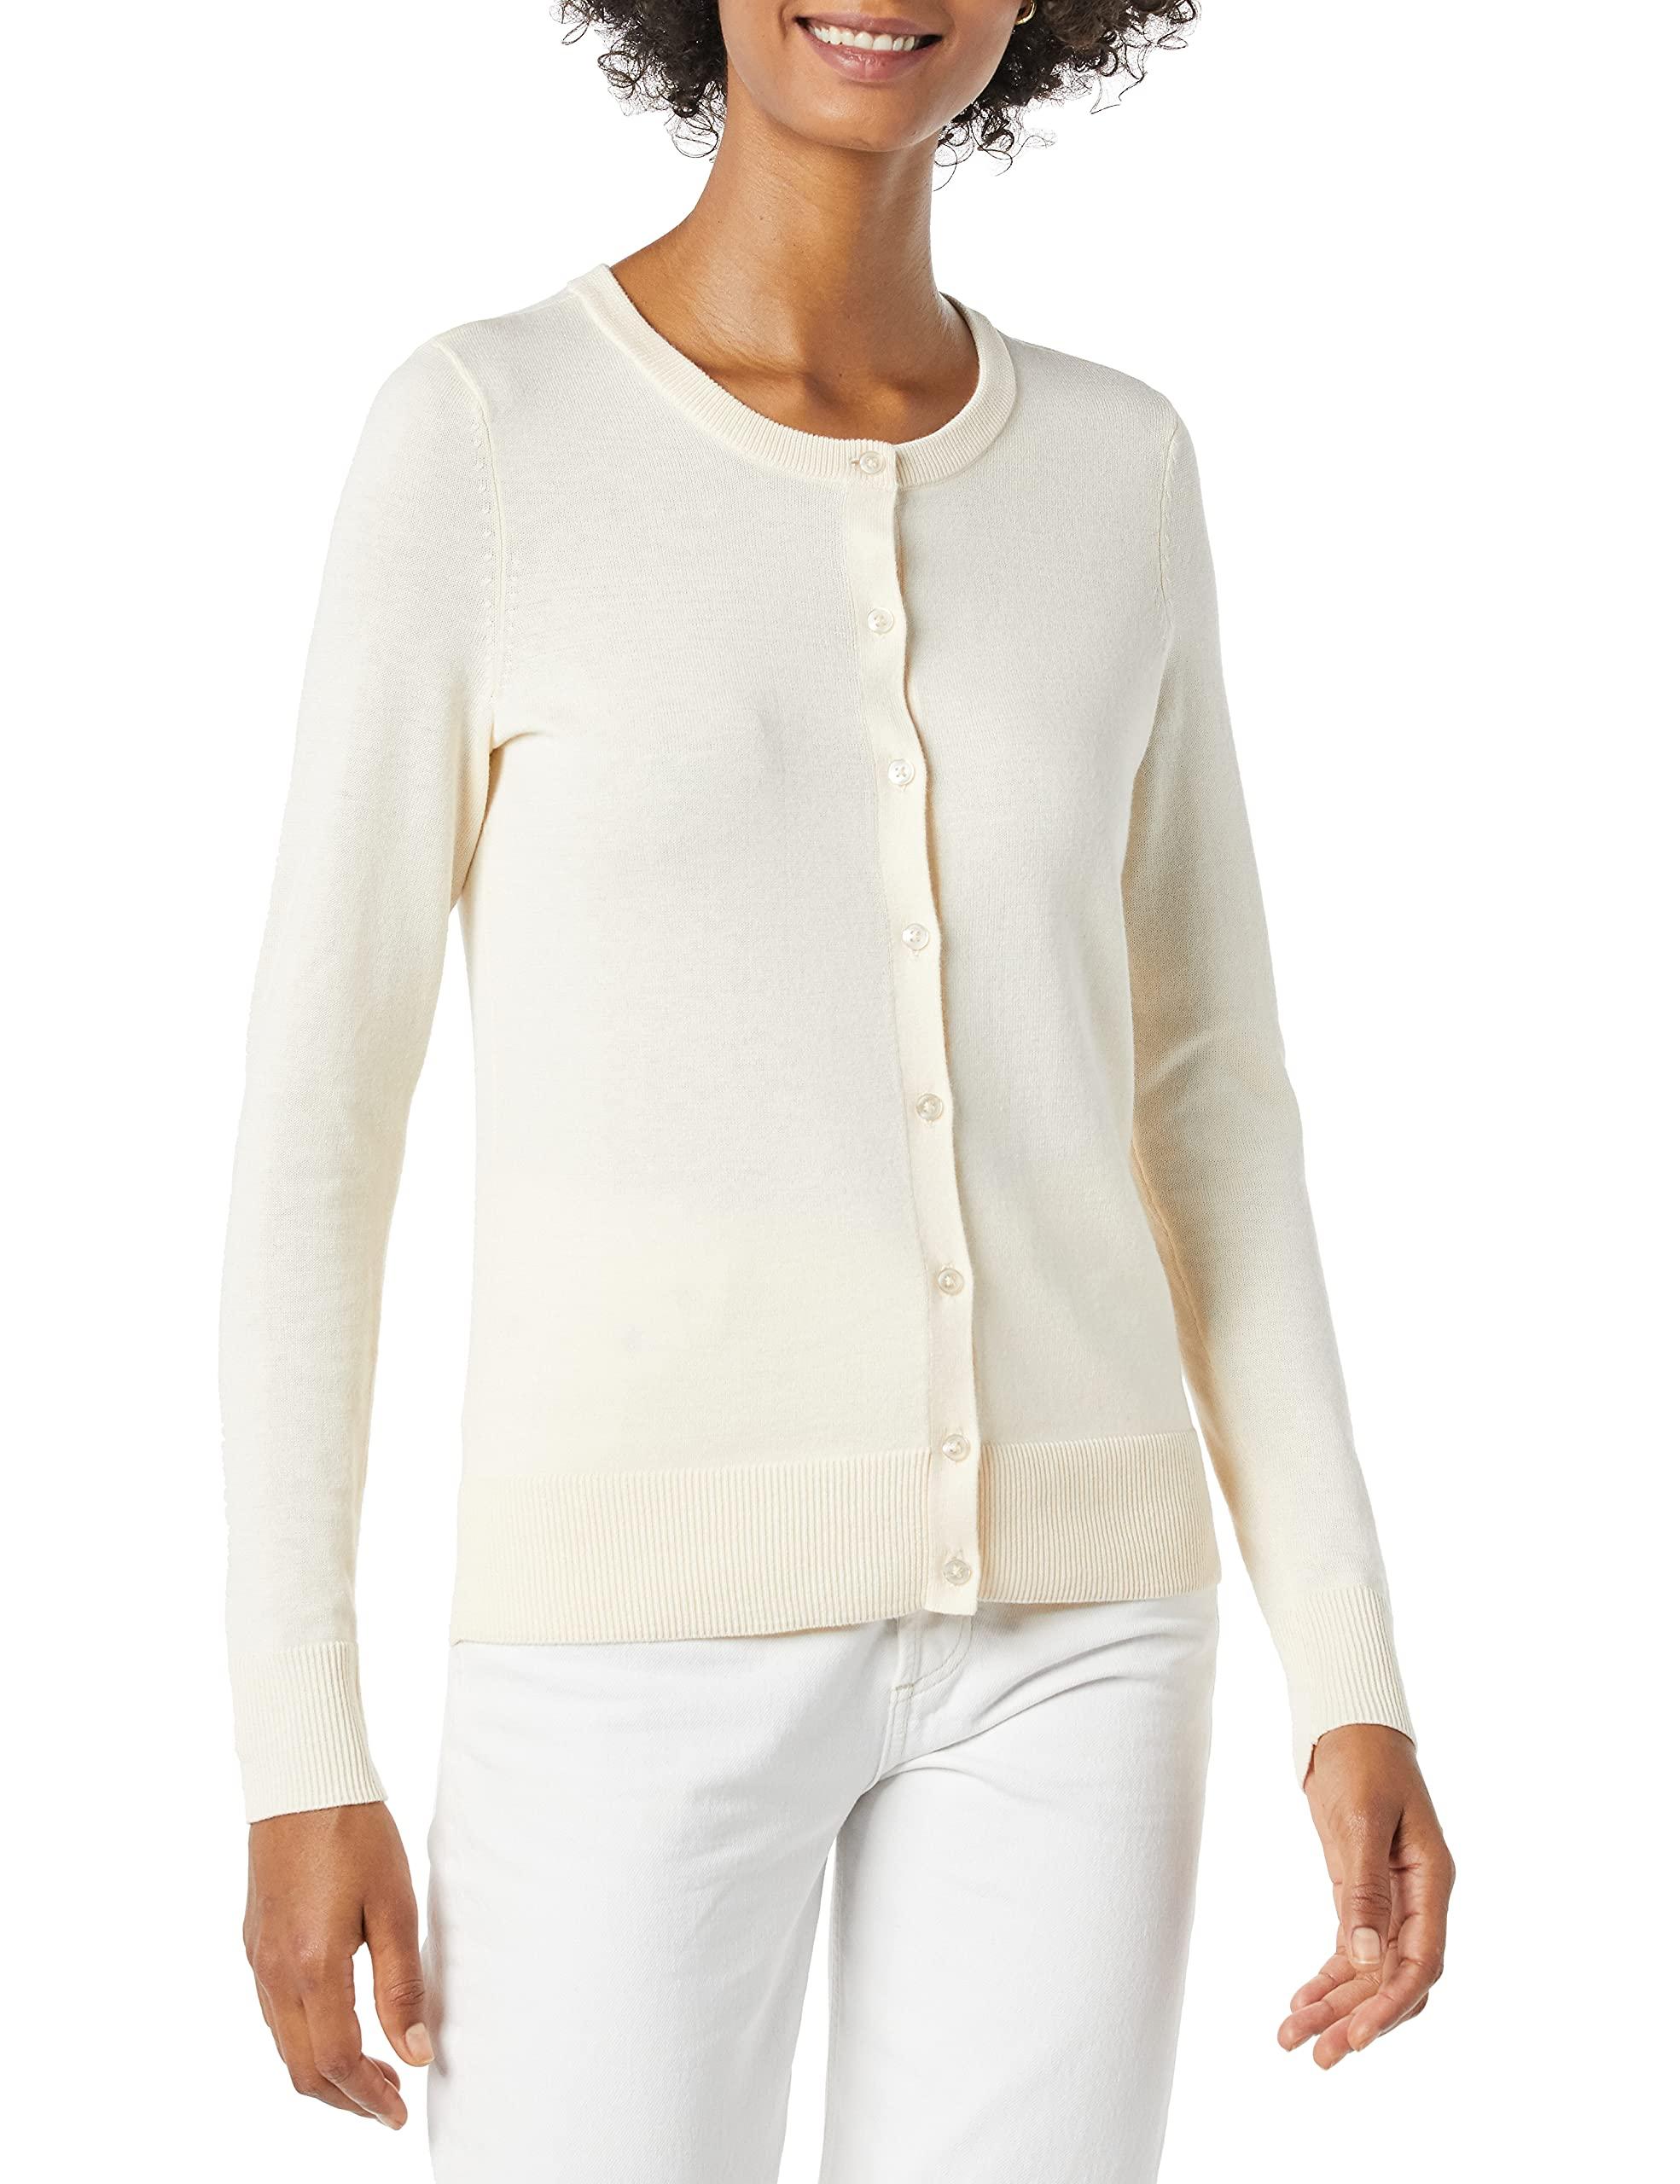 Amazon Essentials Lightweight Crewneck Cardigan Sweater in Ecru (White) -  Save 11% - Lyst